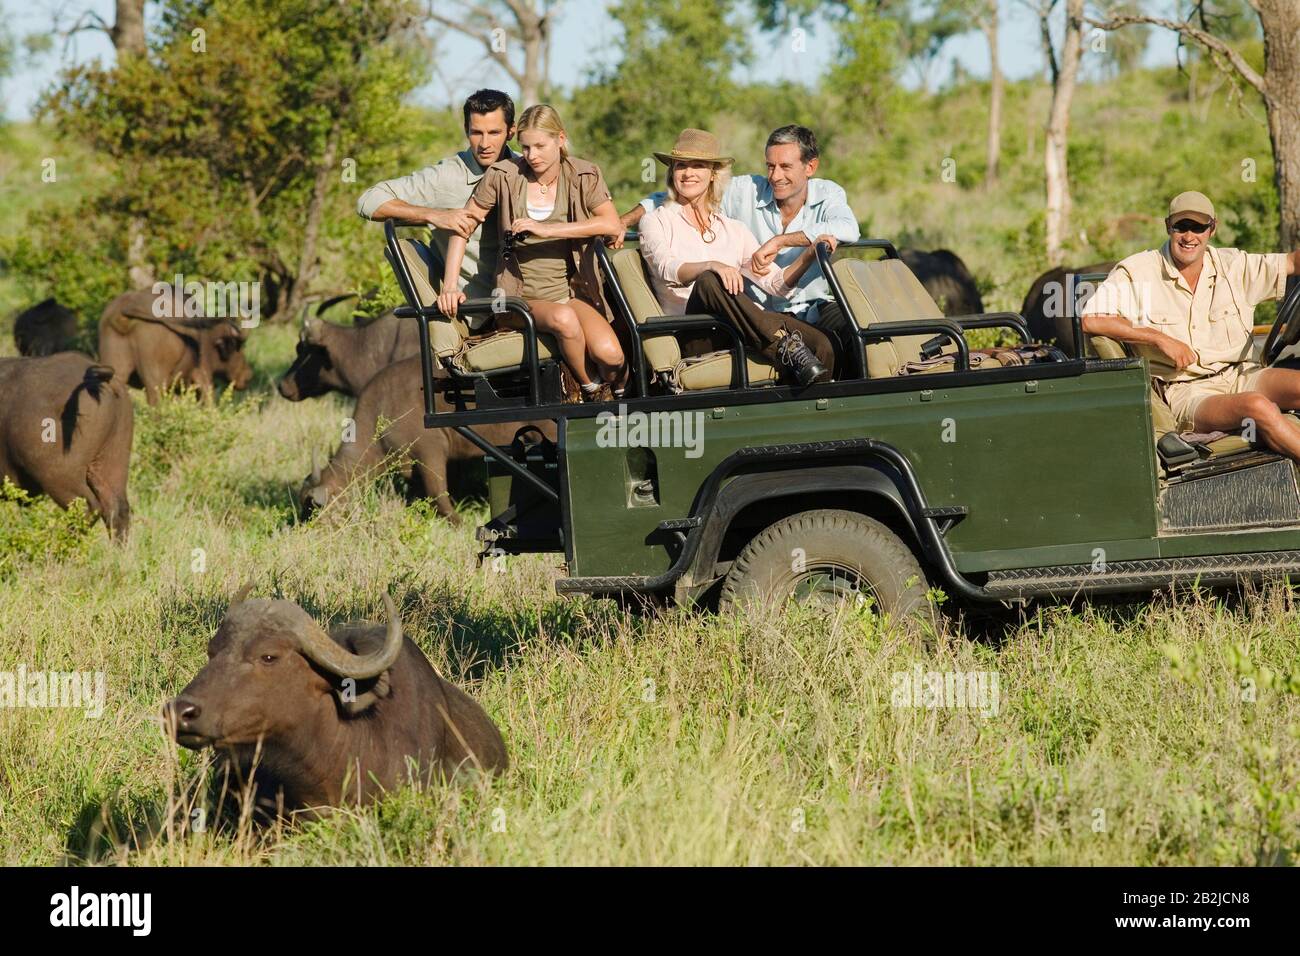 Gruppe von Touristen in Jeep, die afrikanische Büffel betrachten (Syncerus Caffer) Stockfoto